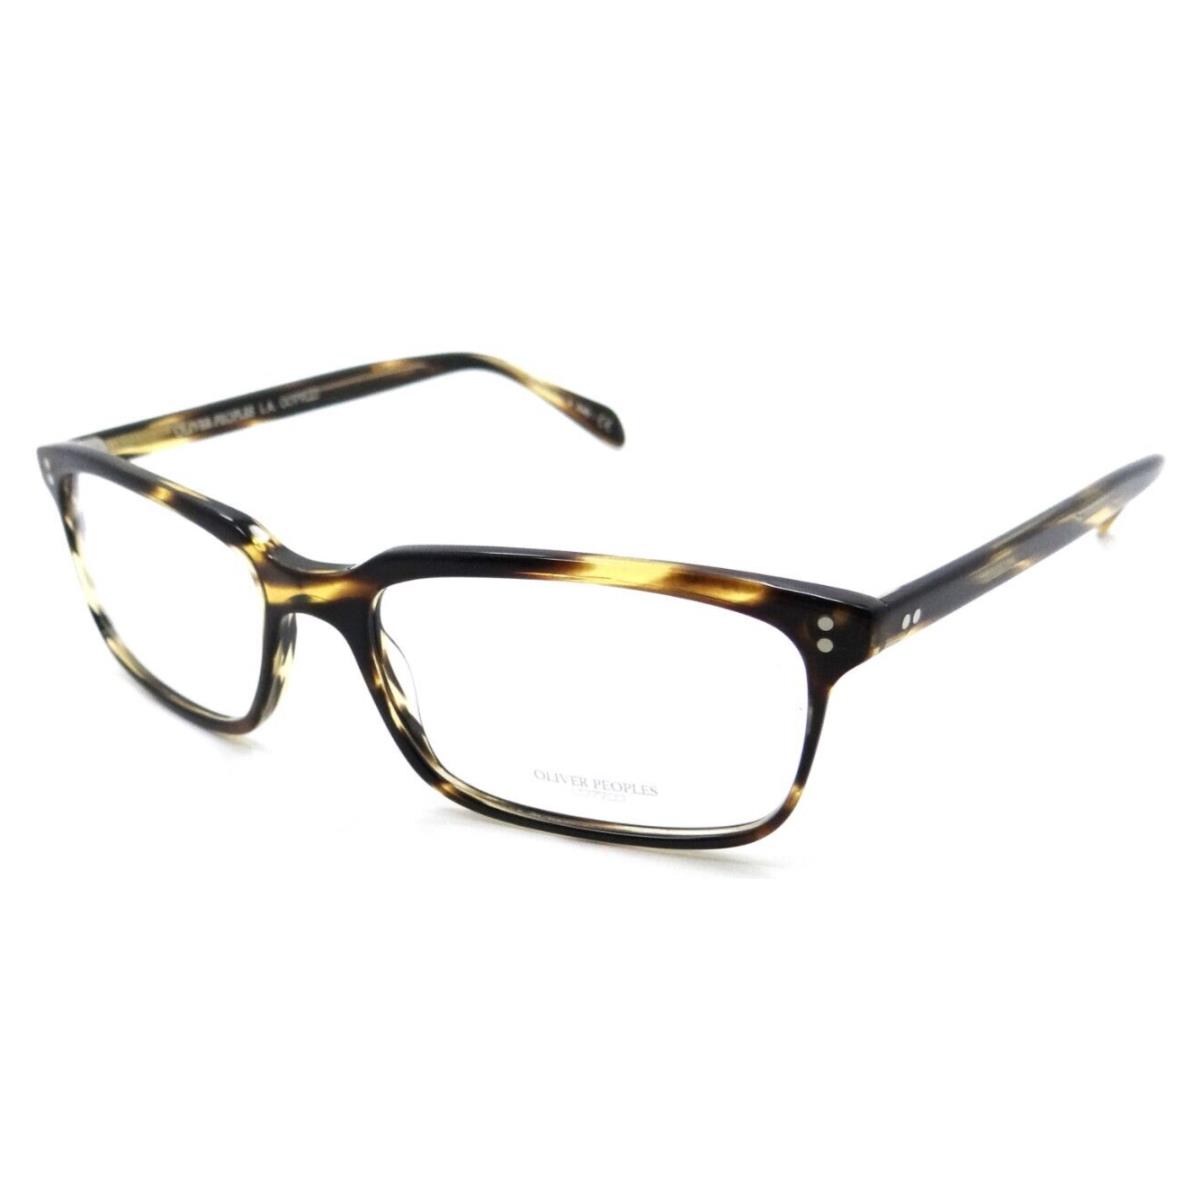 Oliver Peoples Eyeglasses Frames OV 5102 1003 56-17-150 Denison Cocobolo Italy - Frame: Multicolor